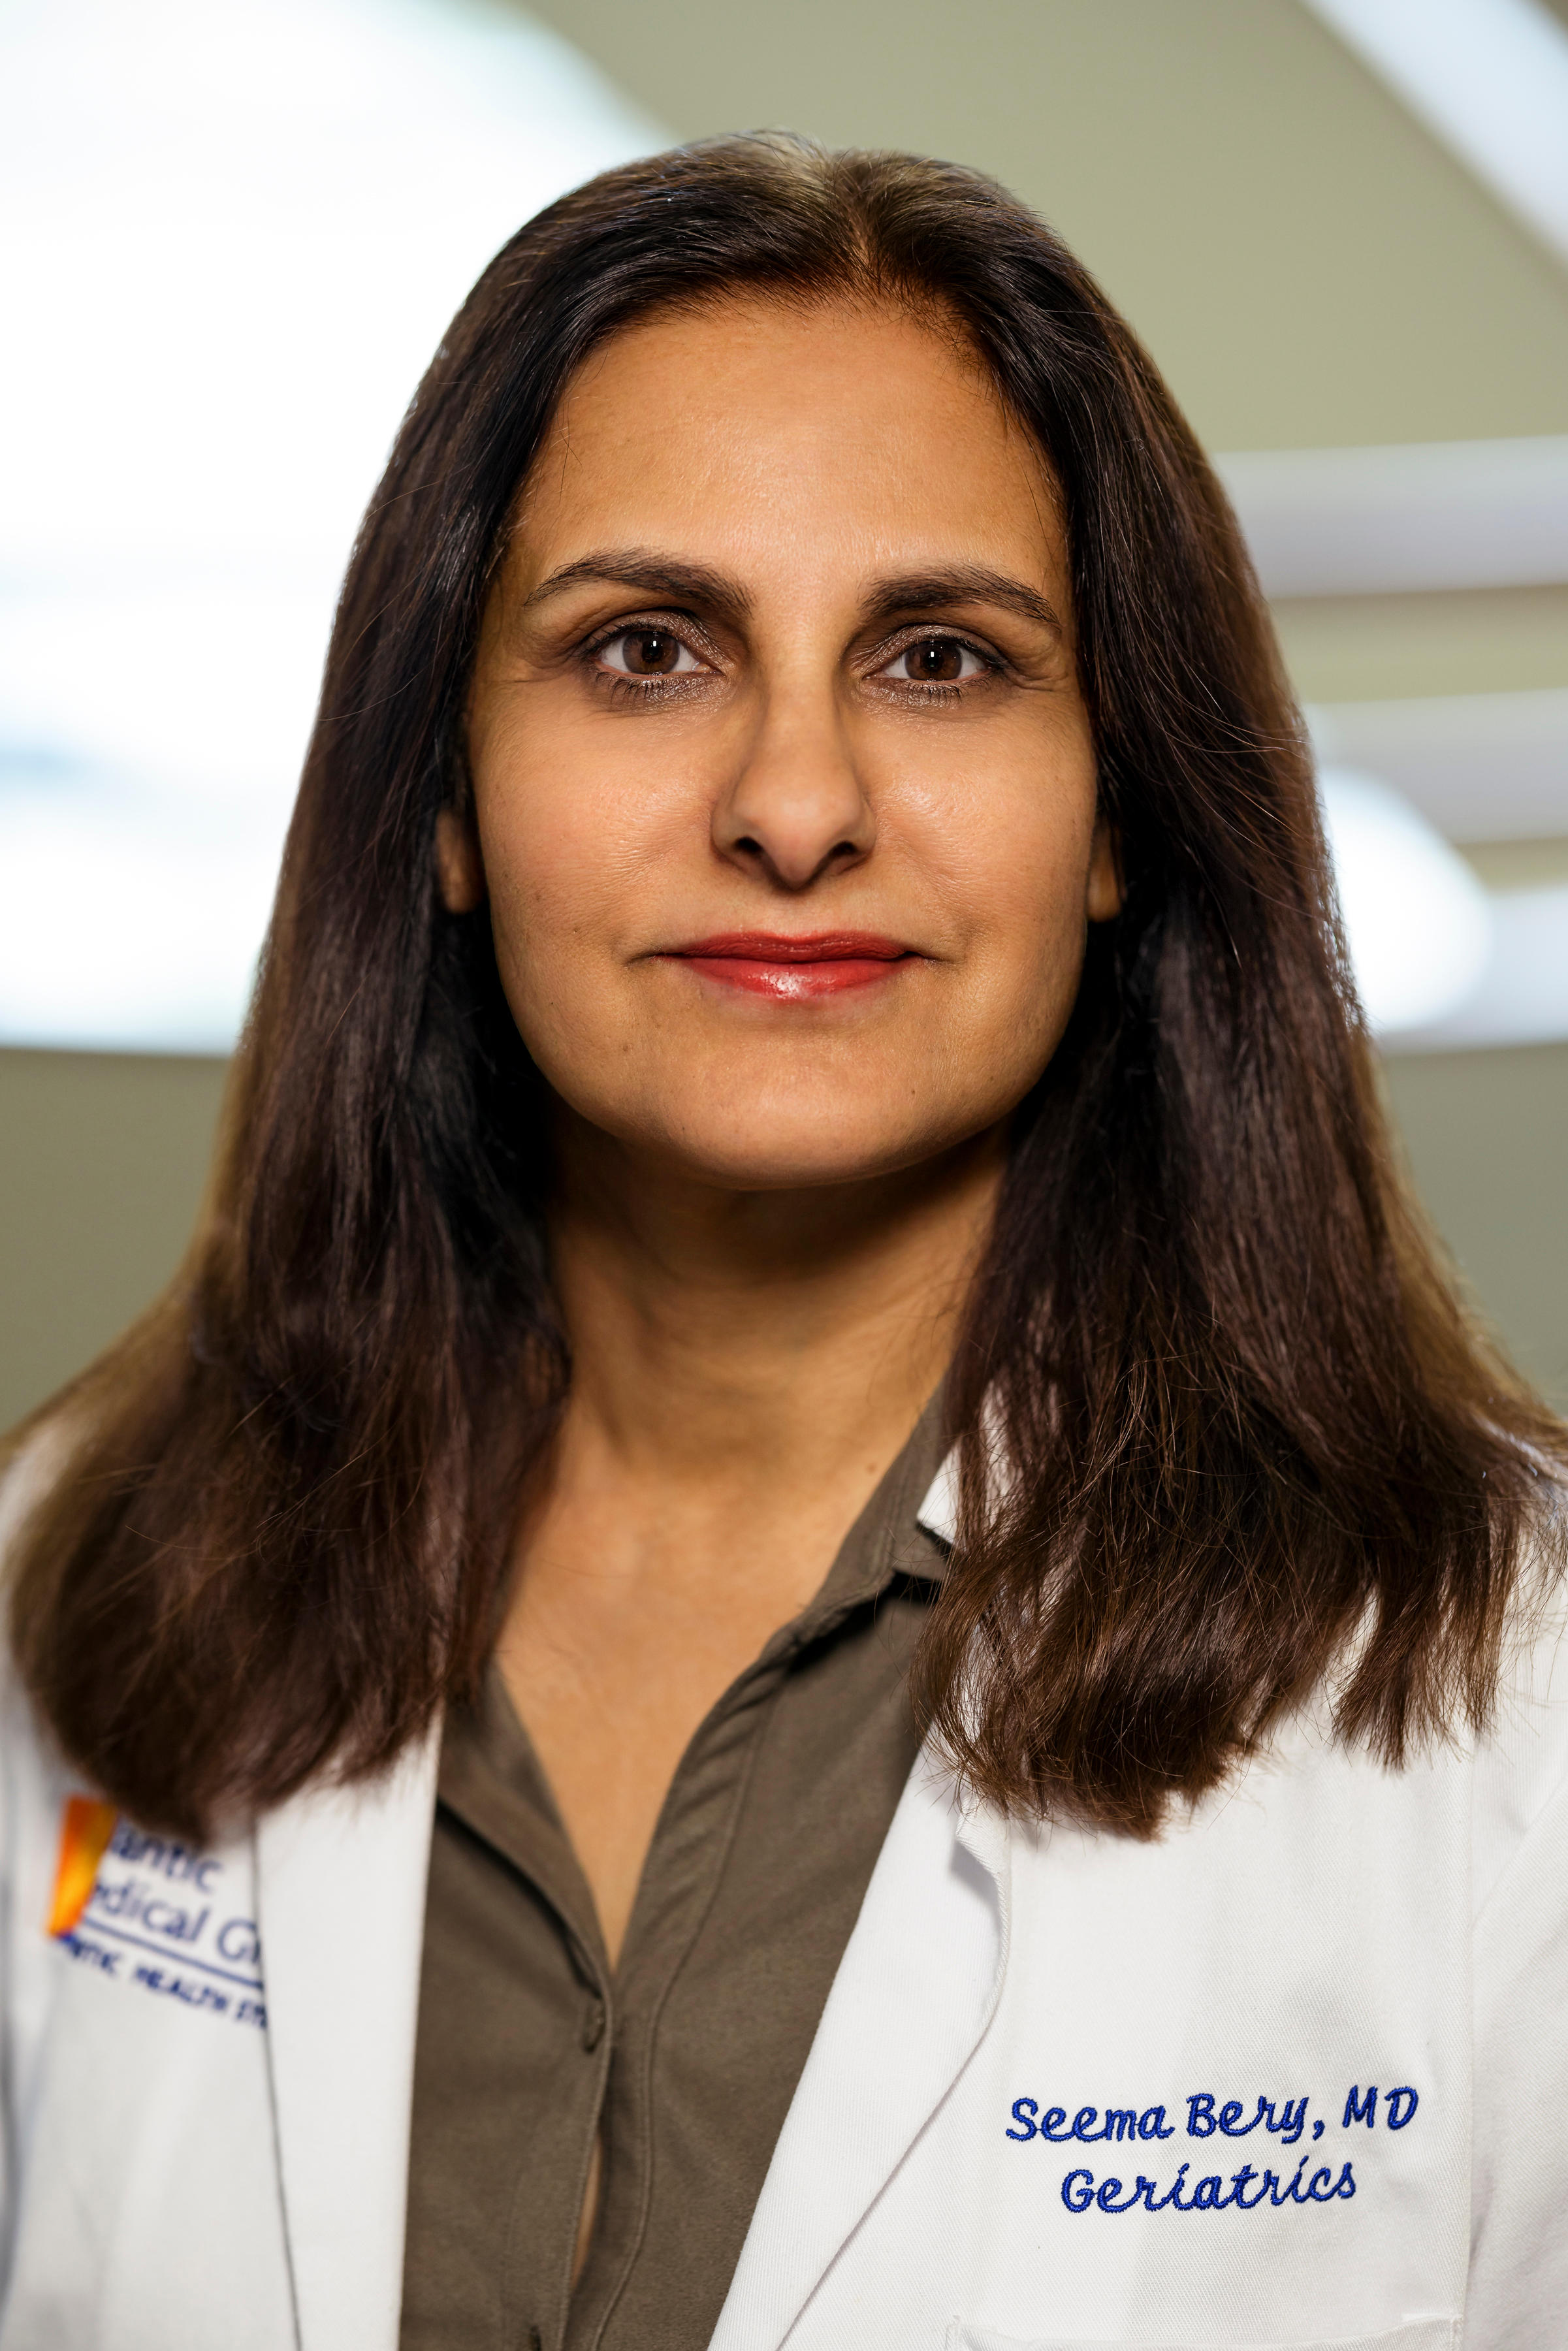 Dr. Seema Bery, MD